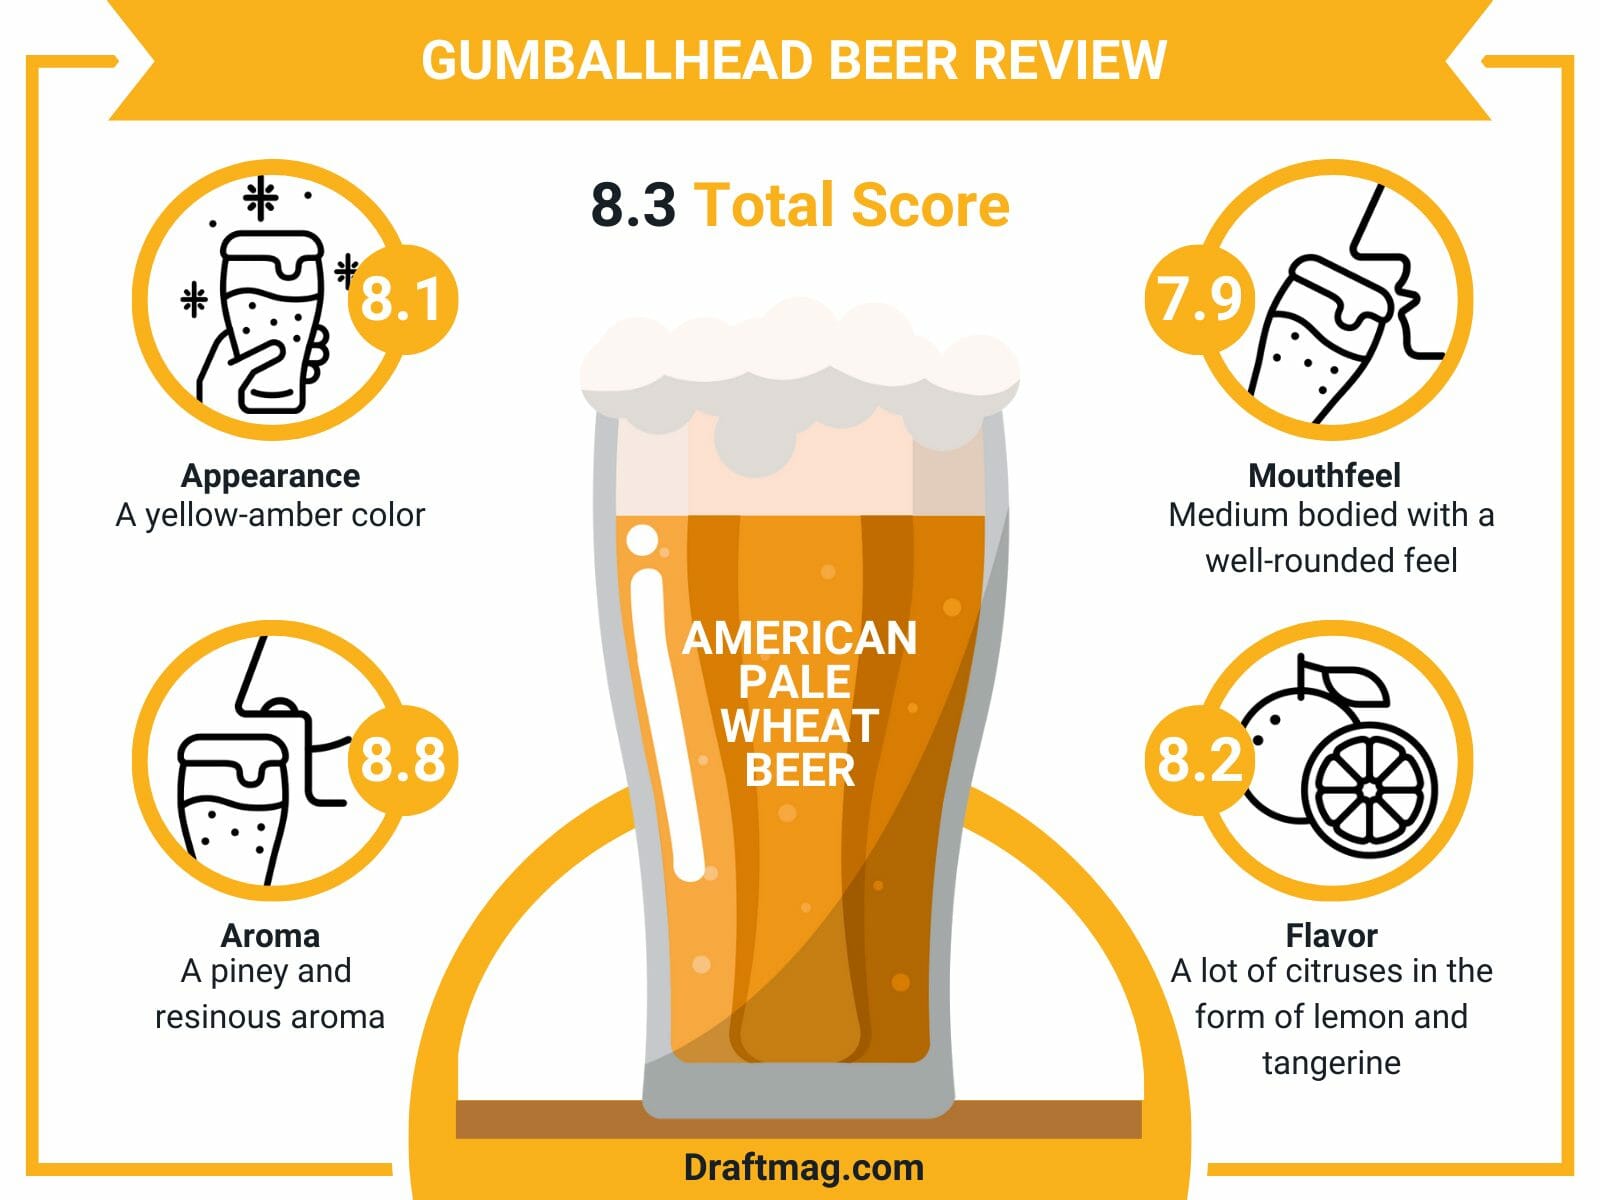 Gumballhead beer review infographic